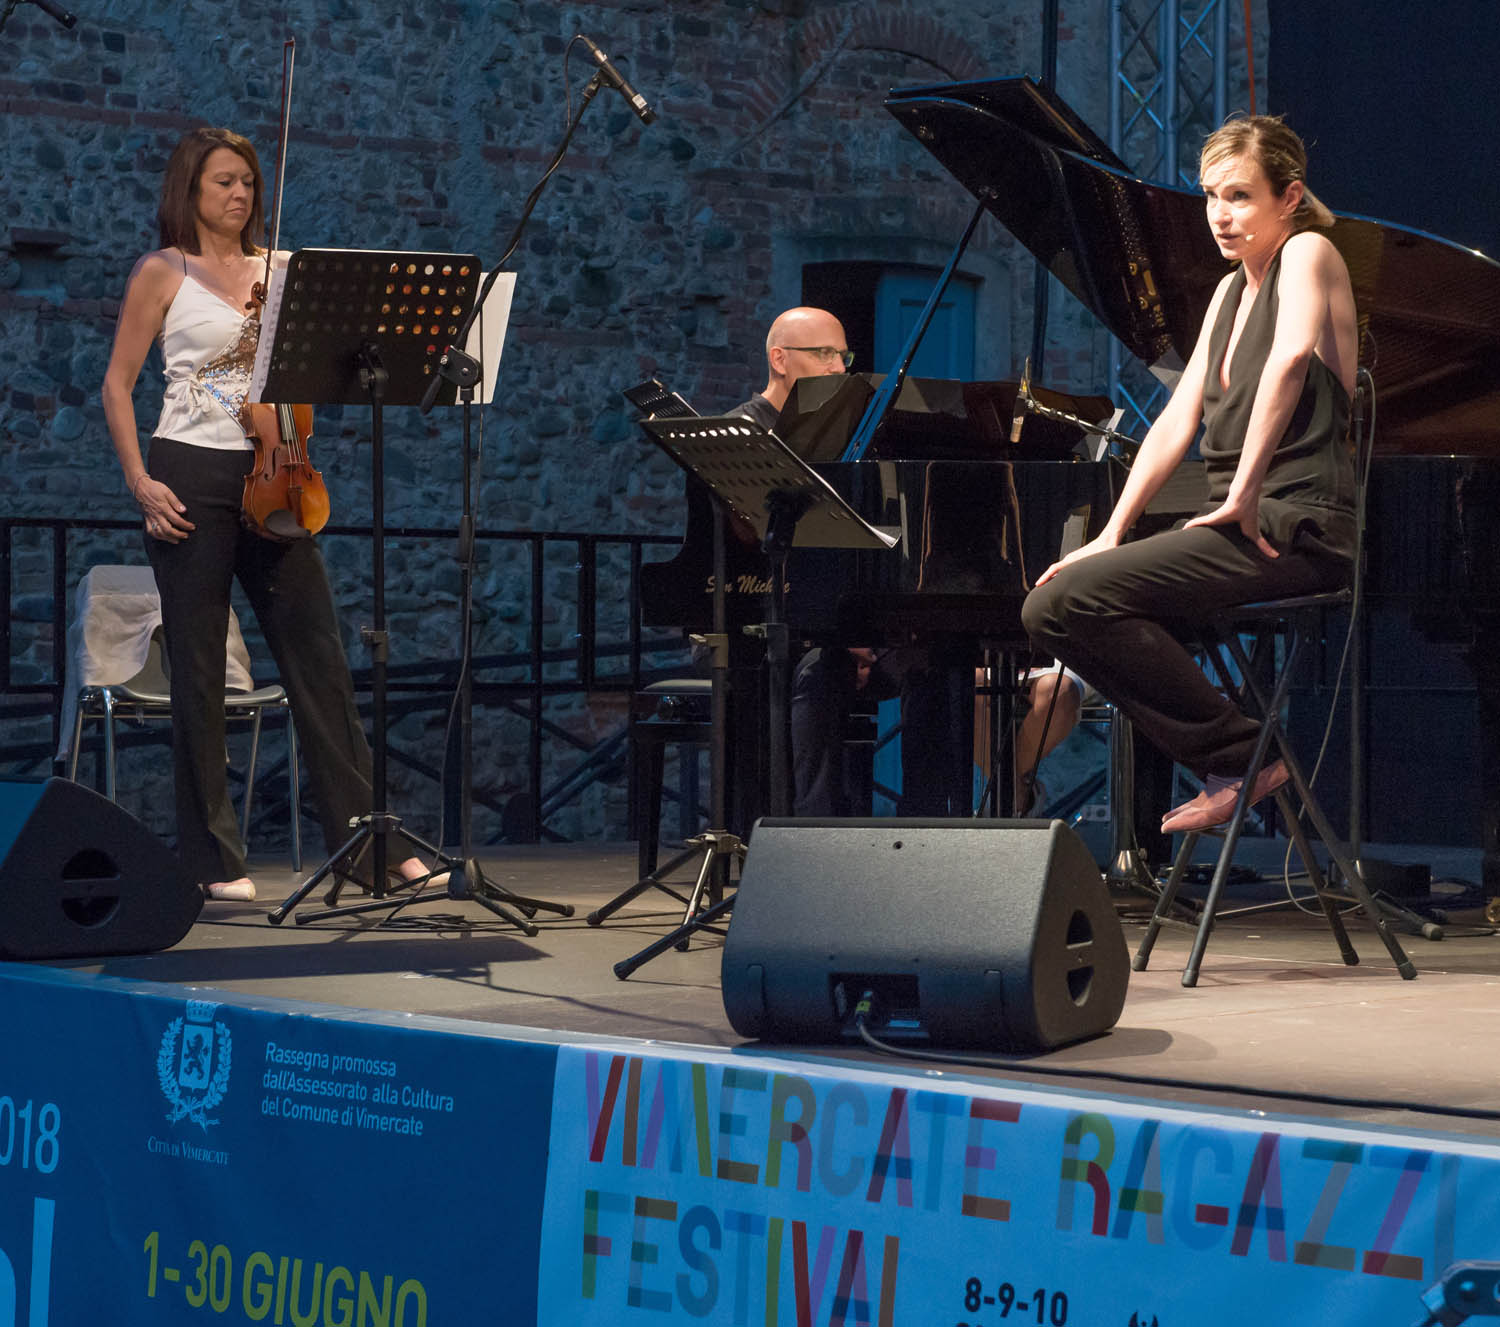 Vimercate - Festival spettacolo: Stefania Rocca